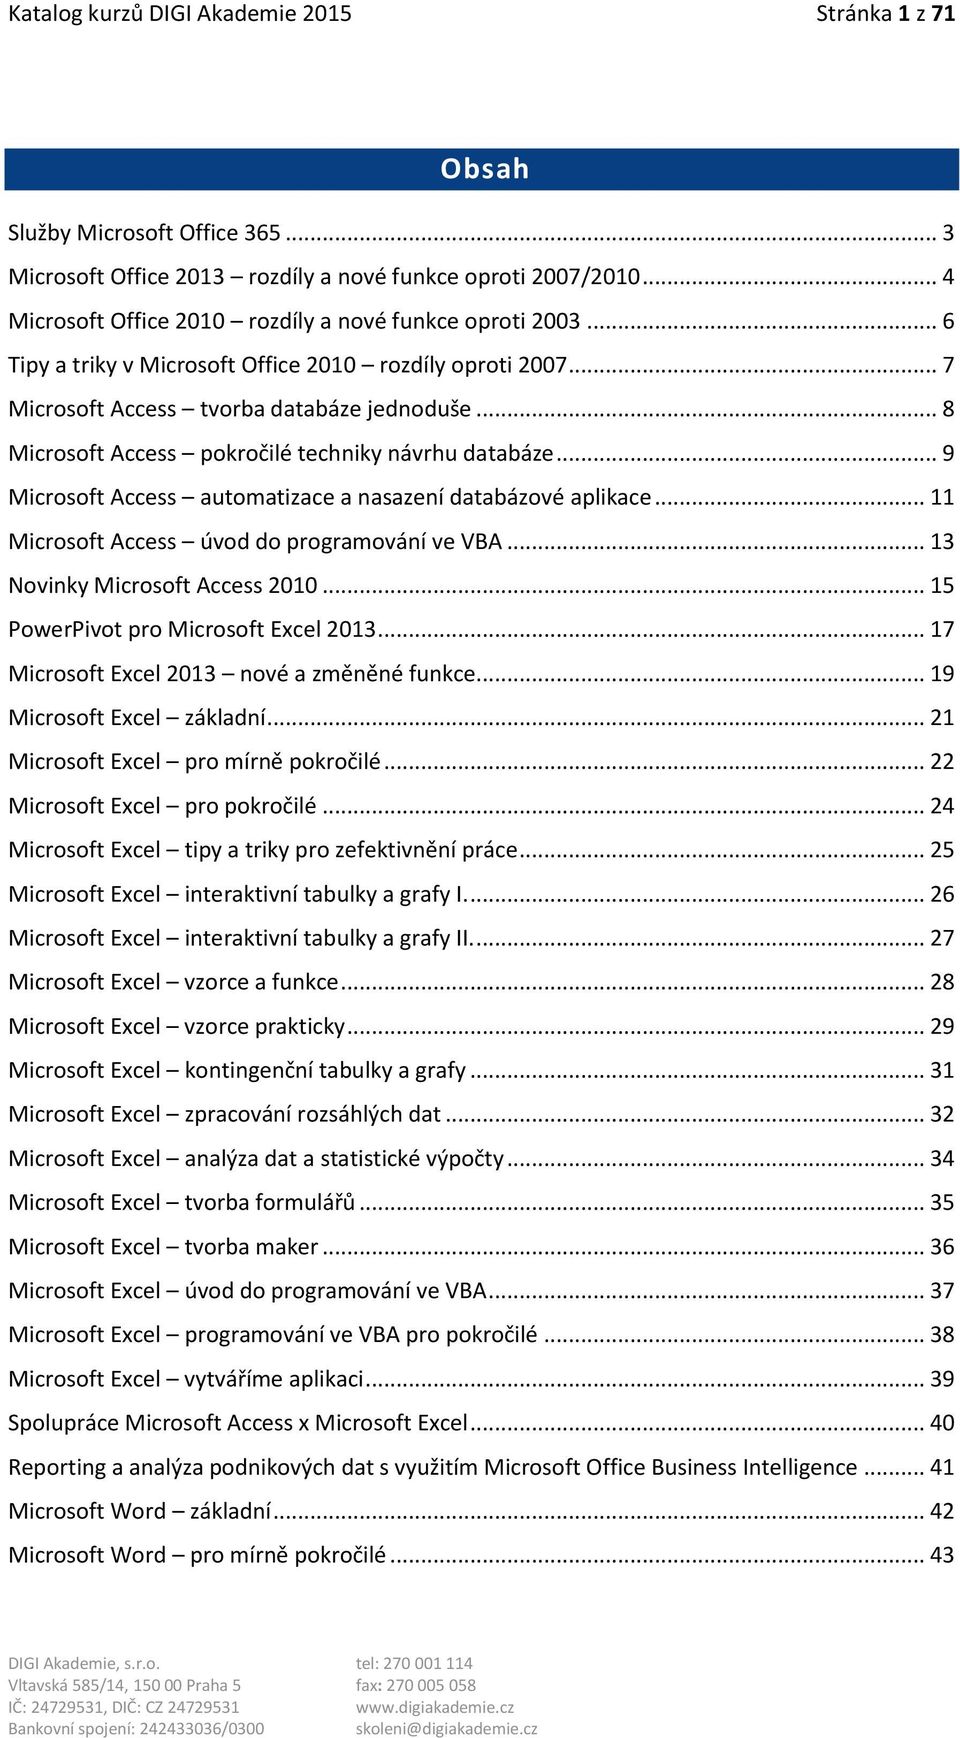 .. 8 Microsoft Access pokročilé techniky návrhu databáze... 9 Microsoft Access automatizace a nasazení databázové aplikace... 11 Microsoft Access úvod do programování ve VBA.